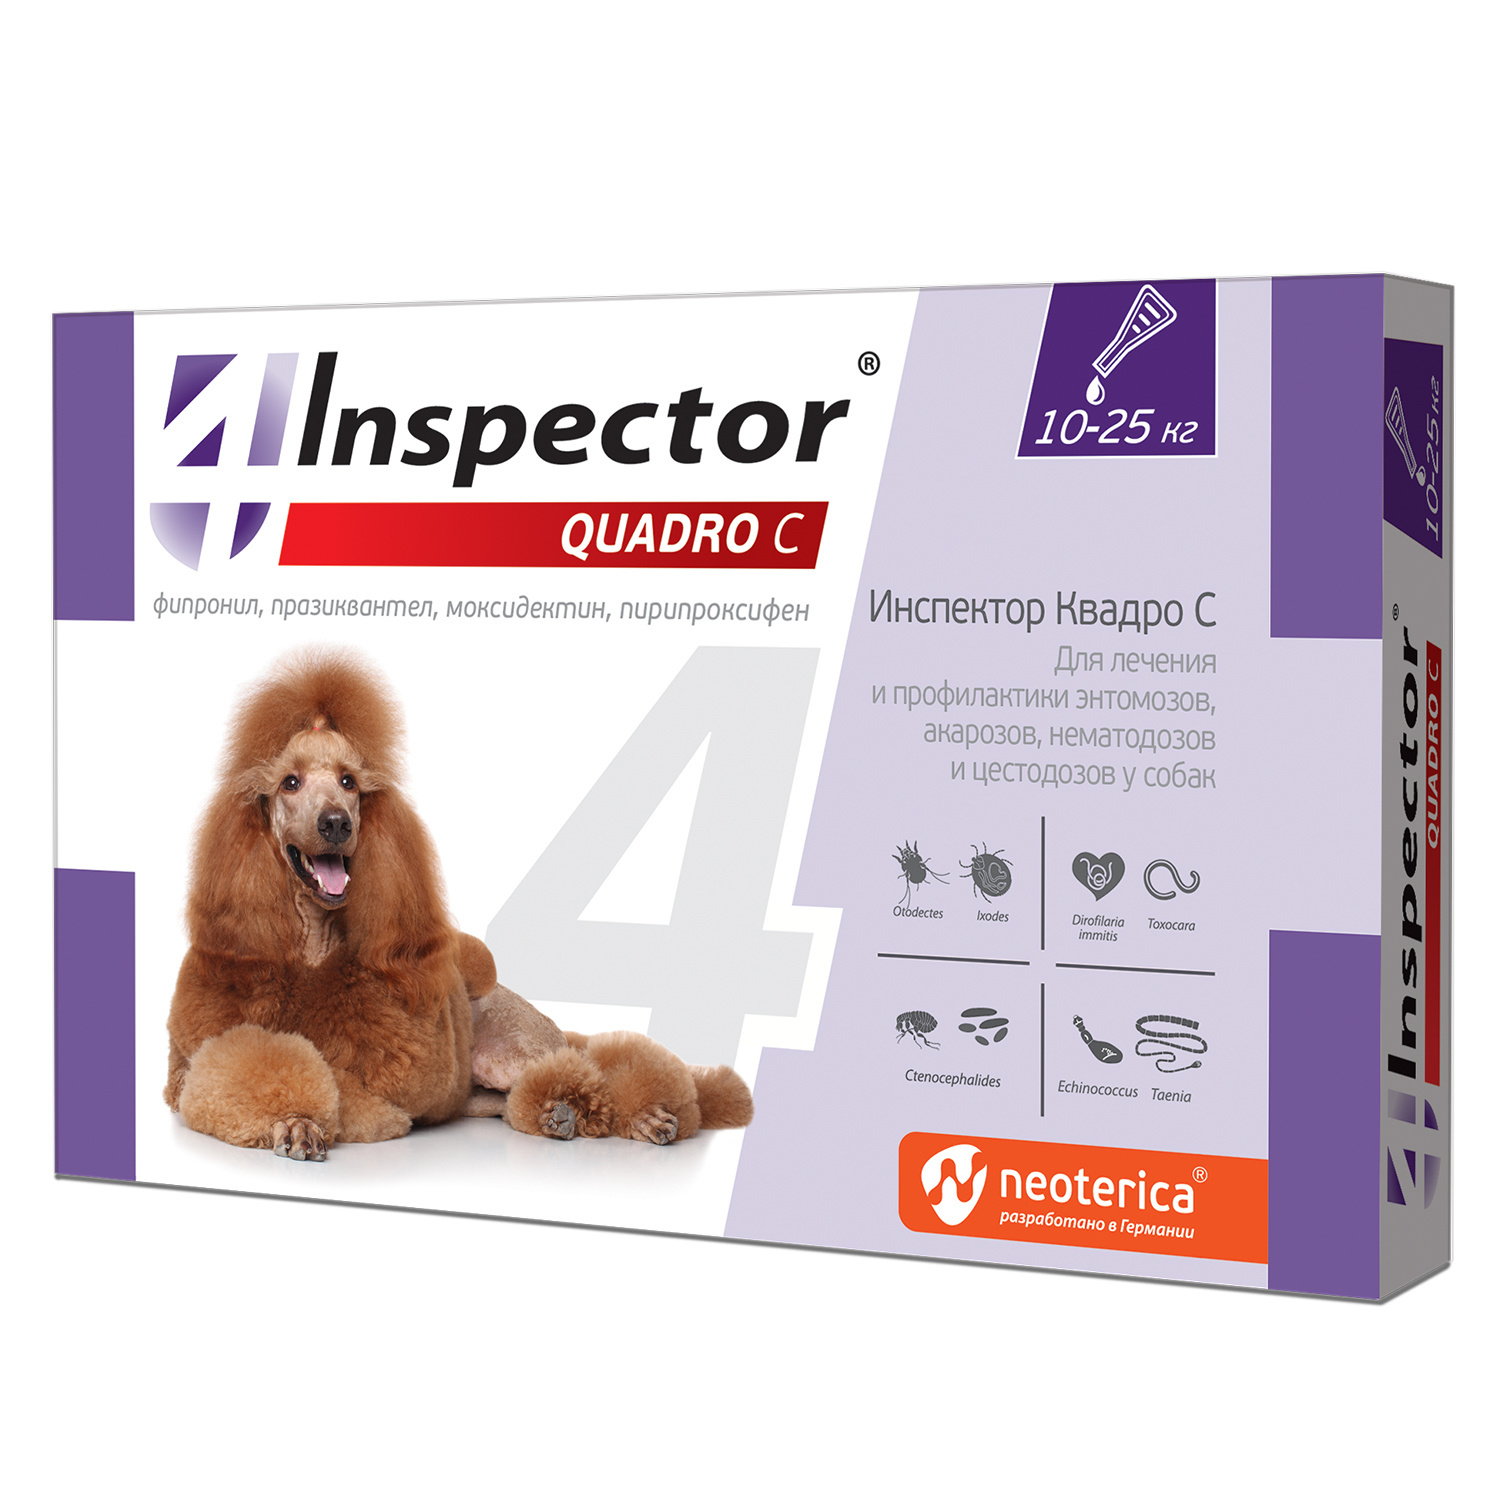 Inspector Inspector quadro капли на холку для собак весом 10-25 кг от клещей, насекомых, глистов (20 г)